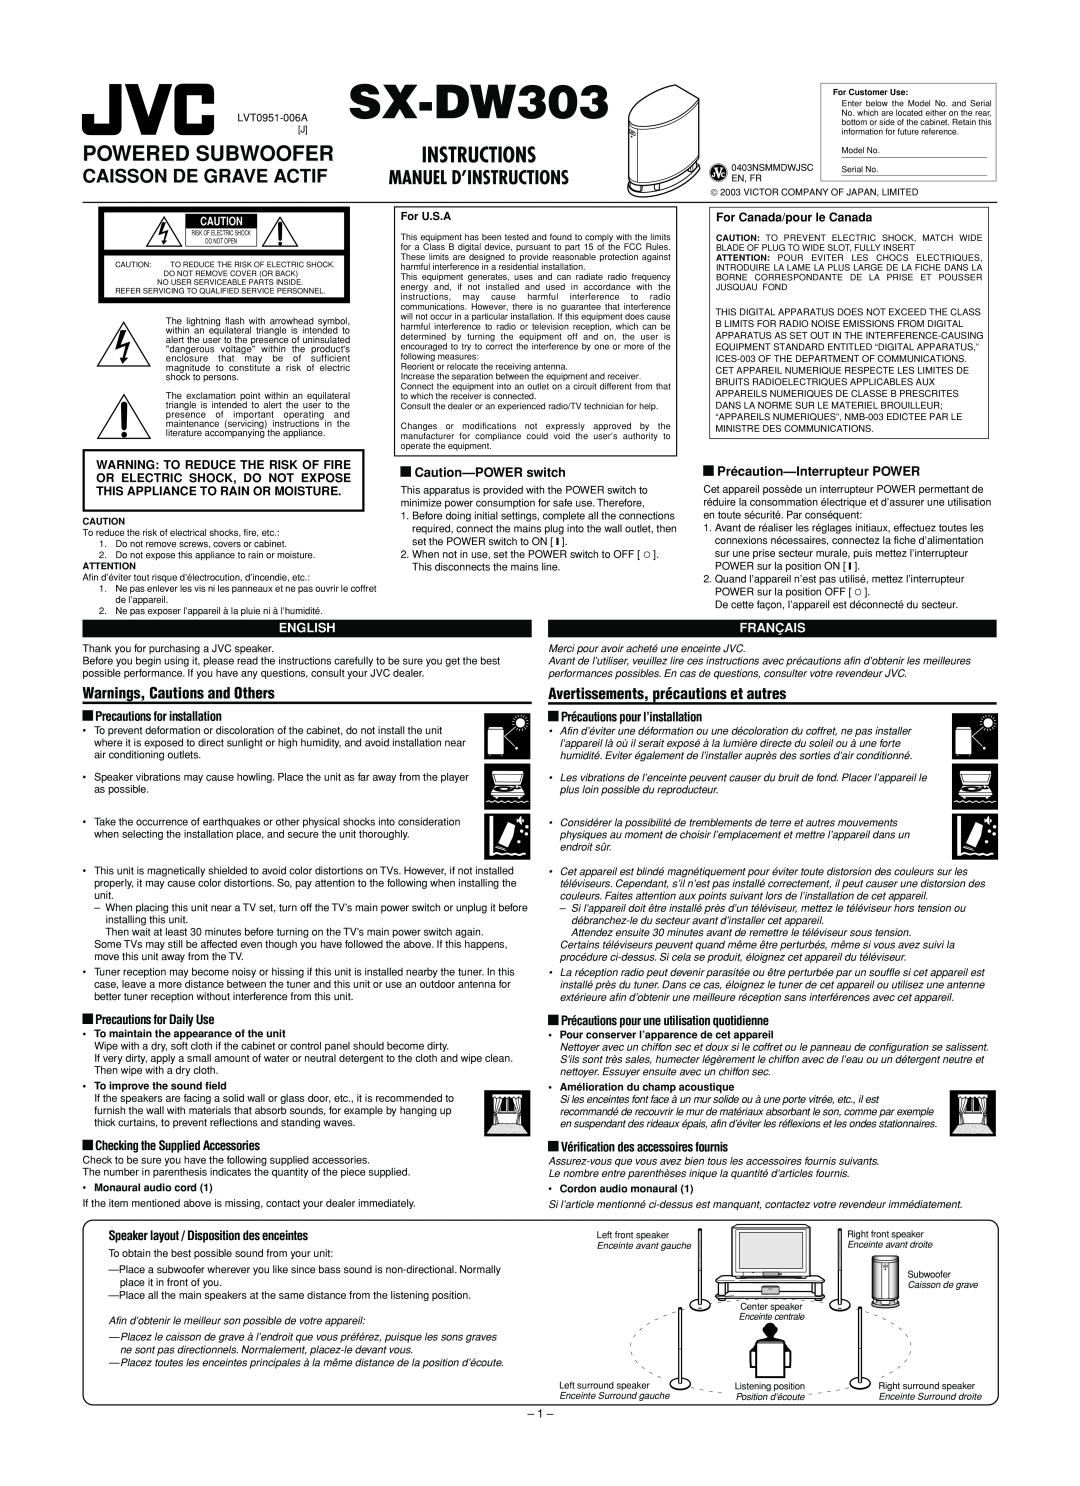 JVC SX-DW303 user service Warnings, Cautions and Others, Avertissements, précautions et autres, English, Français 